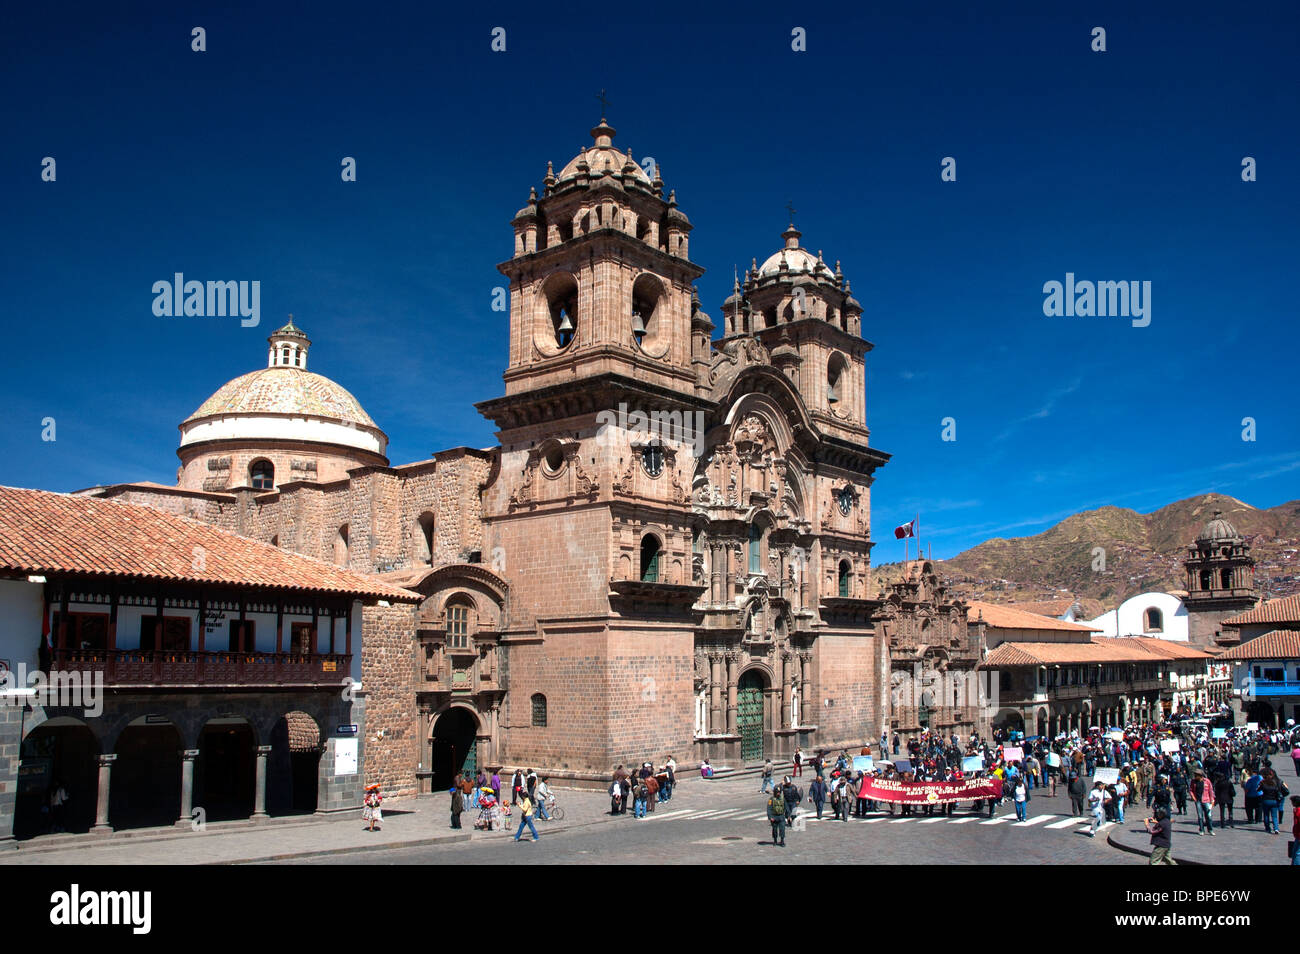 Iglesia de La Compania, dominates Plaza de Armas, or Mayors Plaza, in the center of Cusco, Peru. Stock Photo